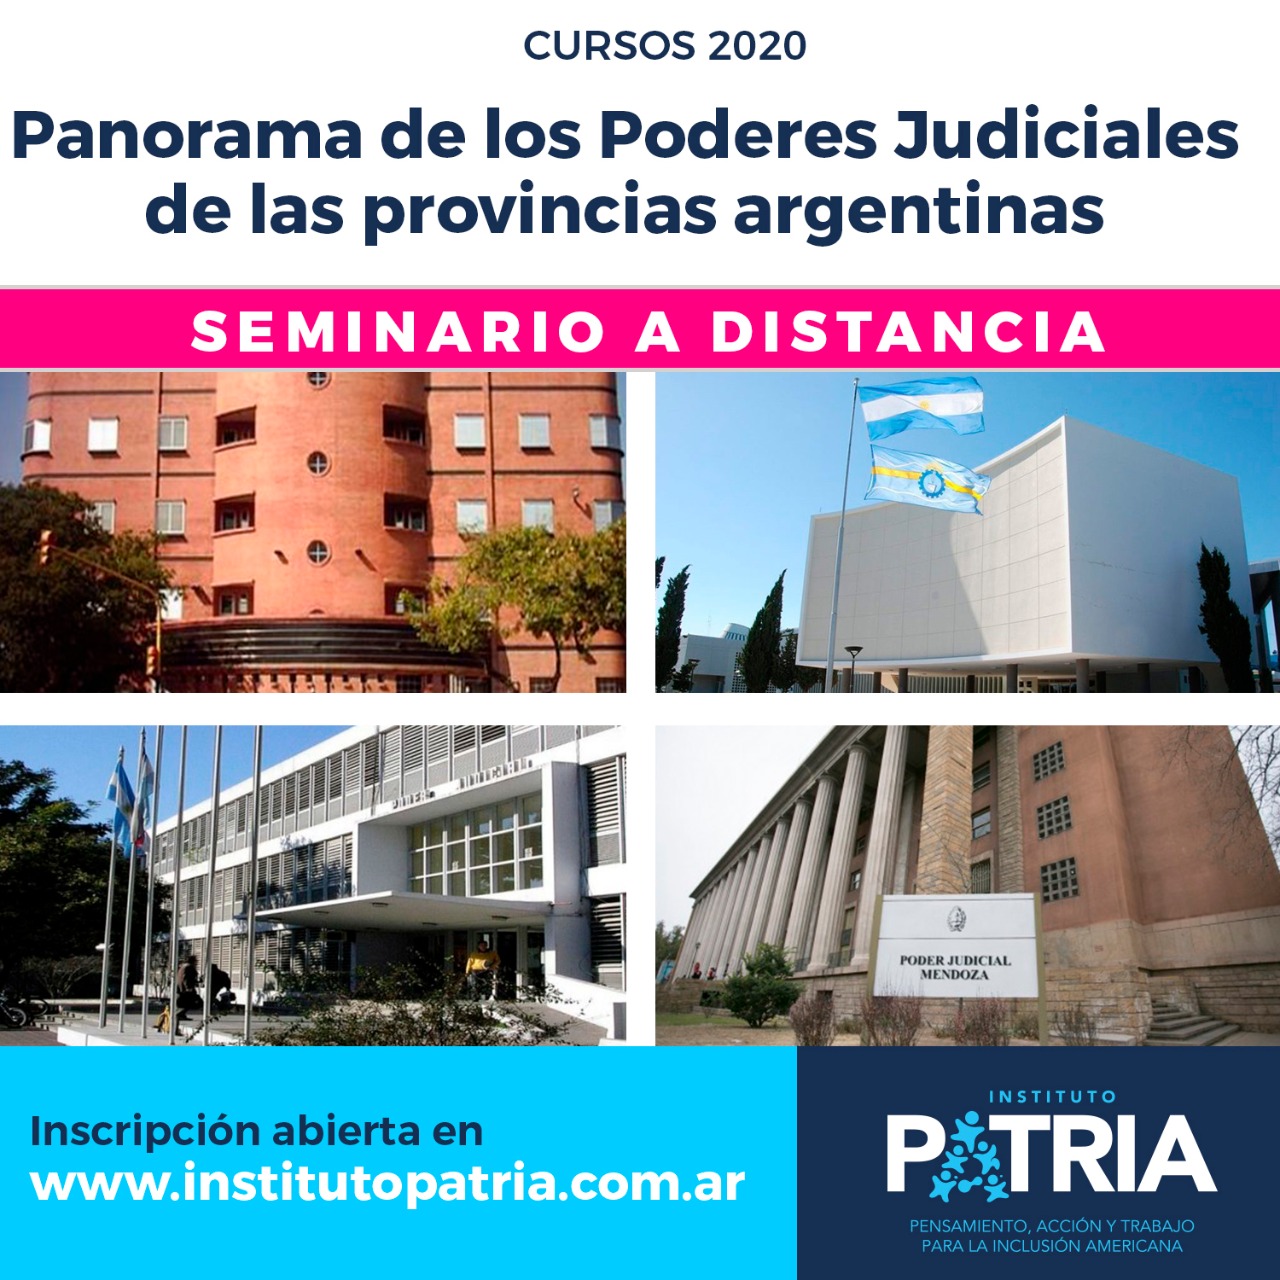 PANORAMA DE LOS PODERES JUDICIALES EN LAS PROVINCIAS ARGENTINAS